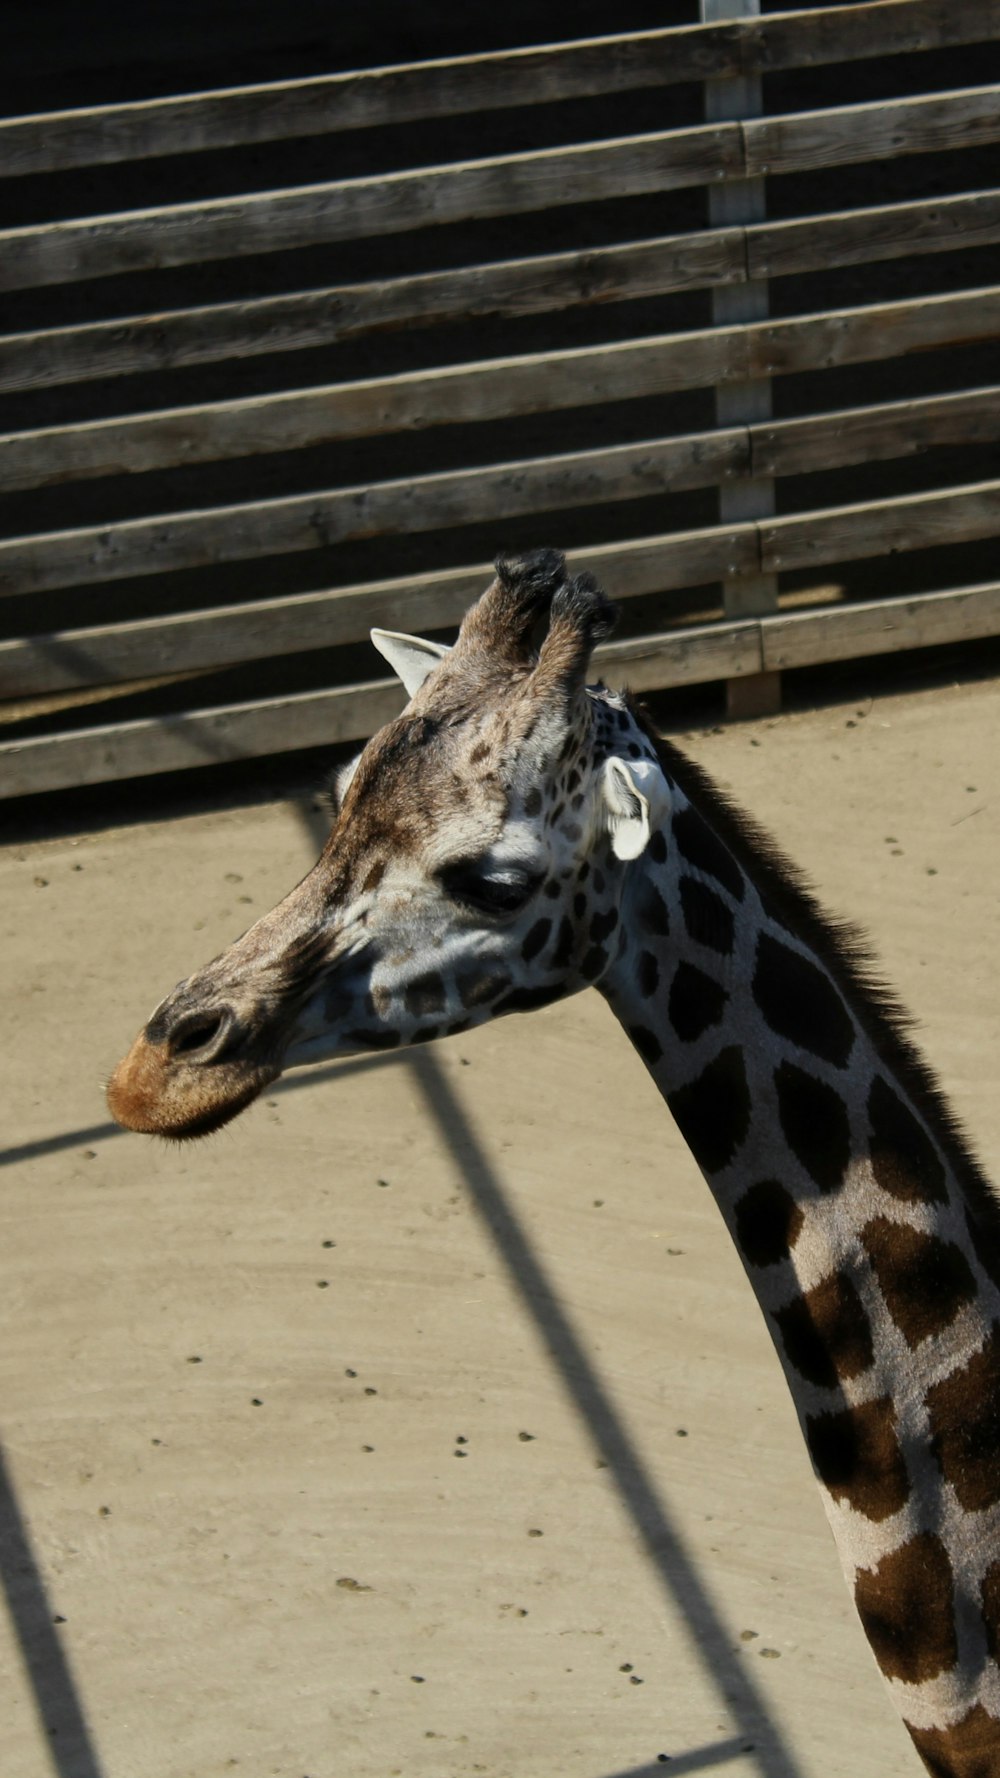 a giraffe stands in a zoo enclosure